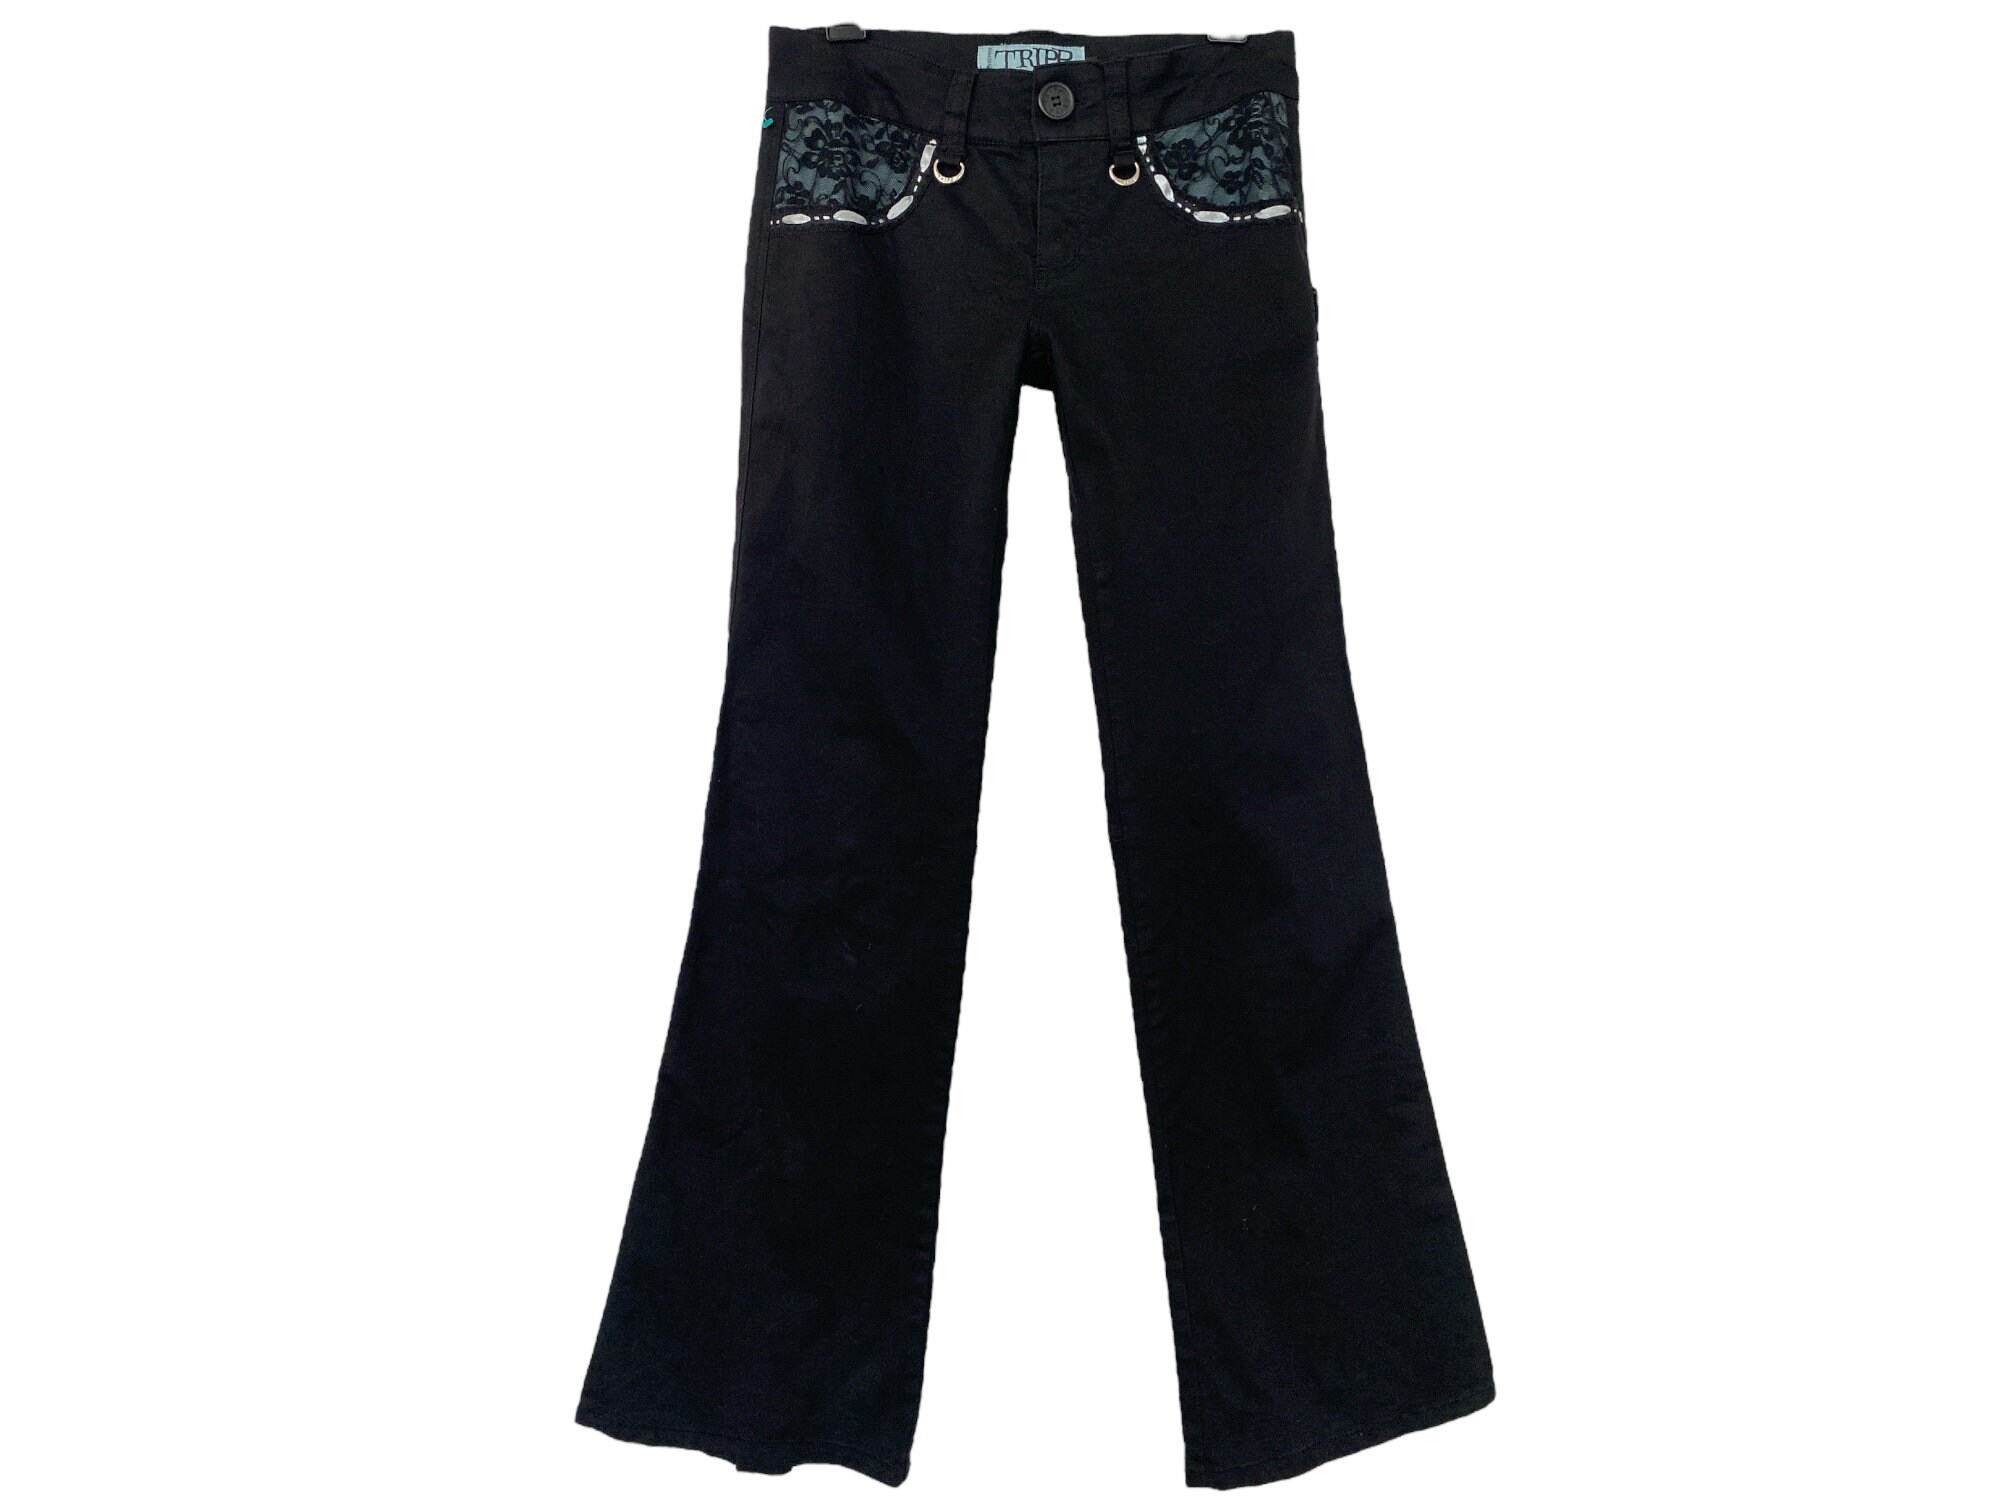 Tripp nyc, Pants & Jumpsuits, Rare Vintage Black Tripp Pants Size 5